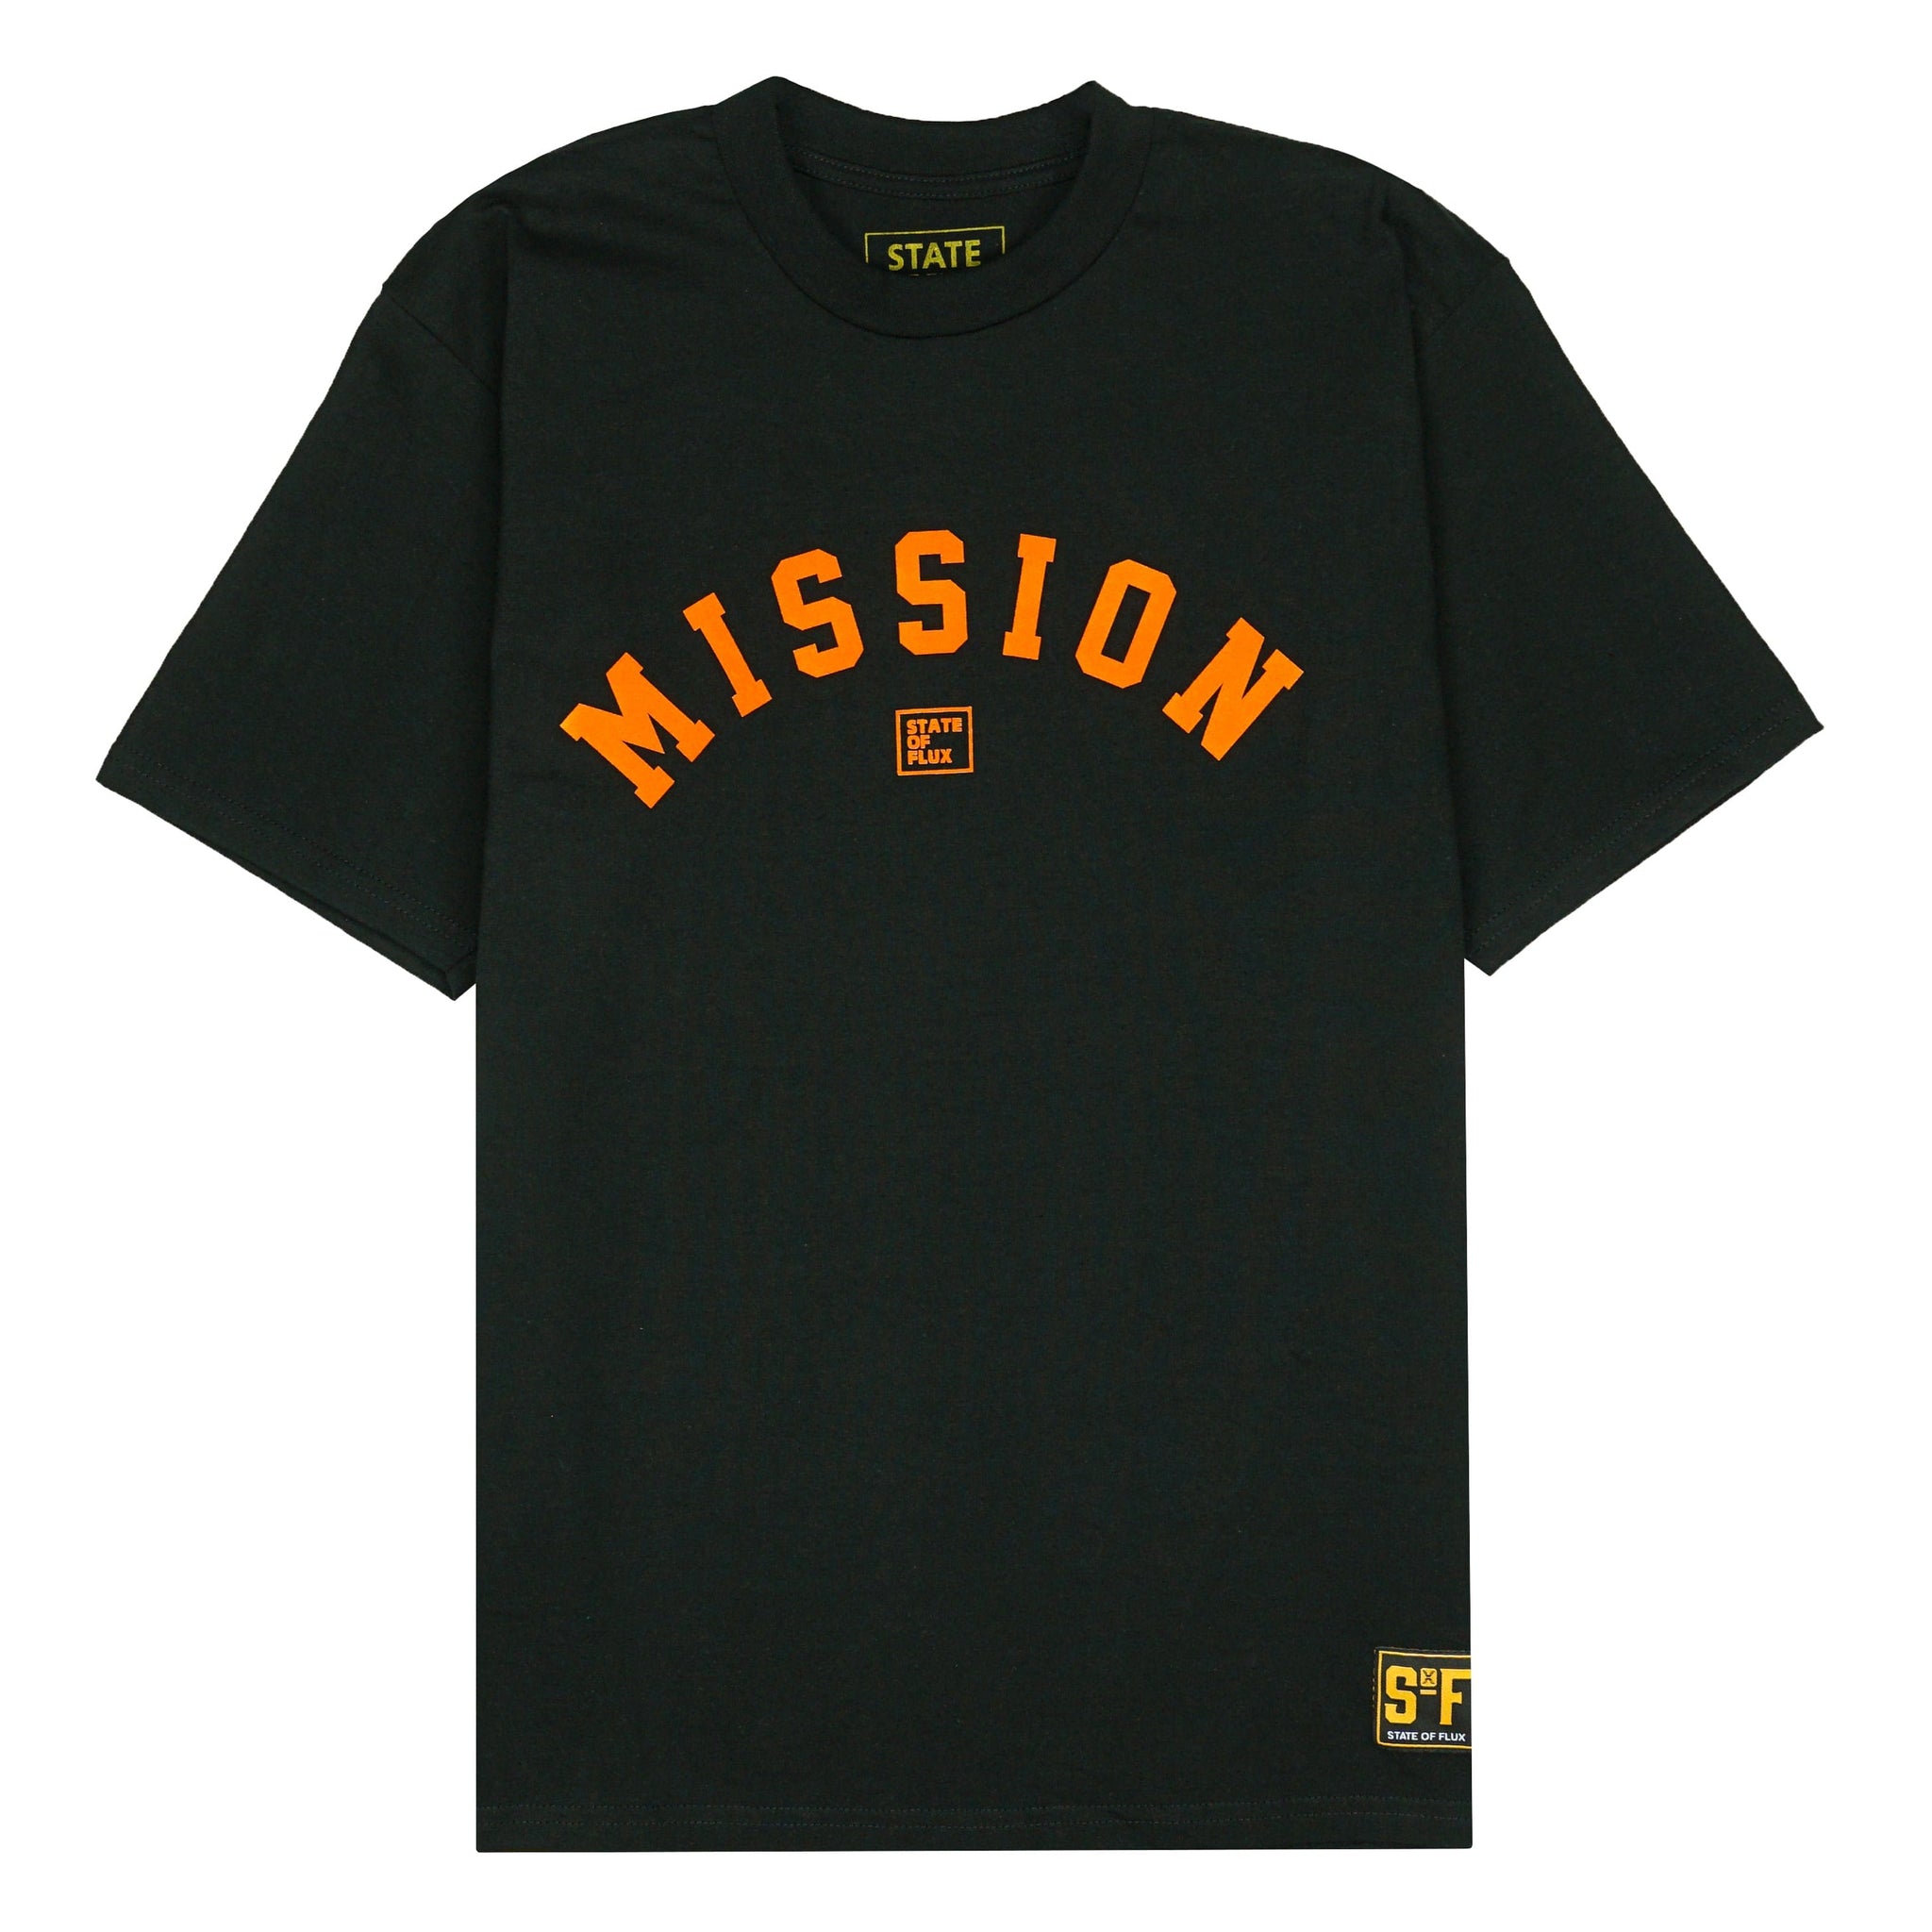 OG Mission Tee in black and orange